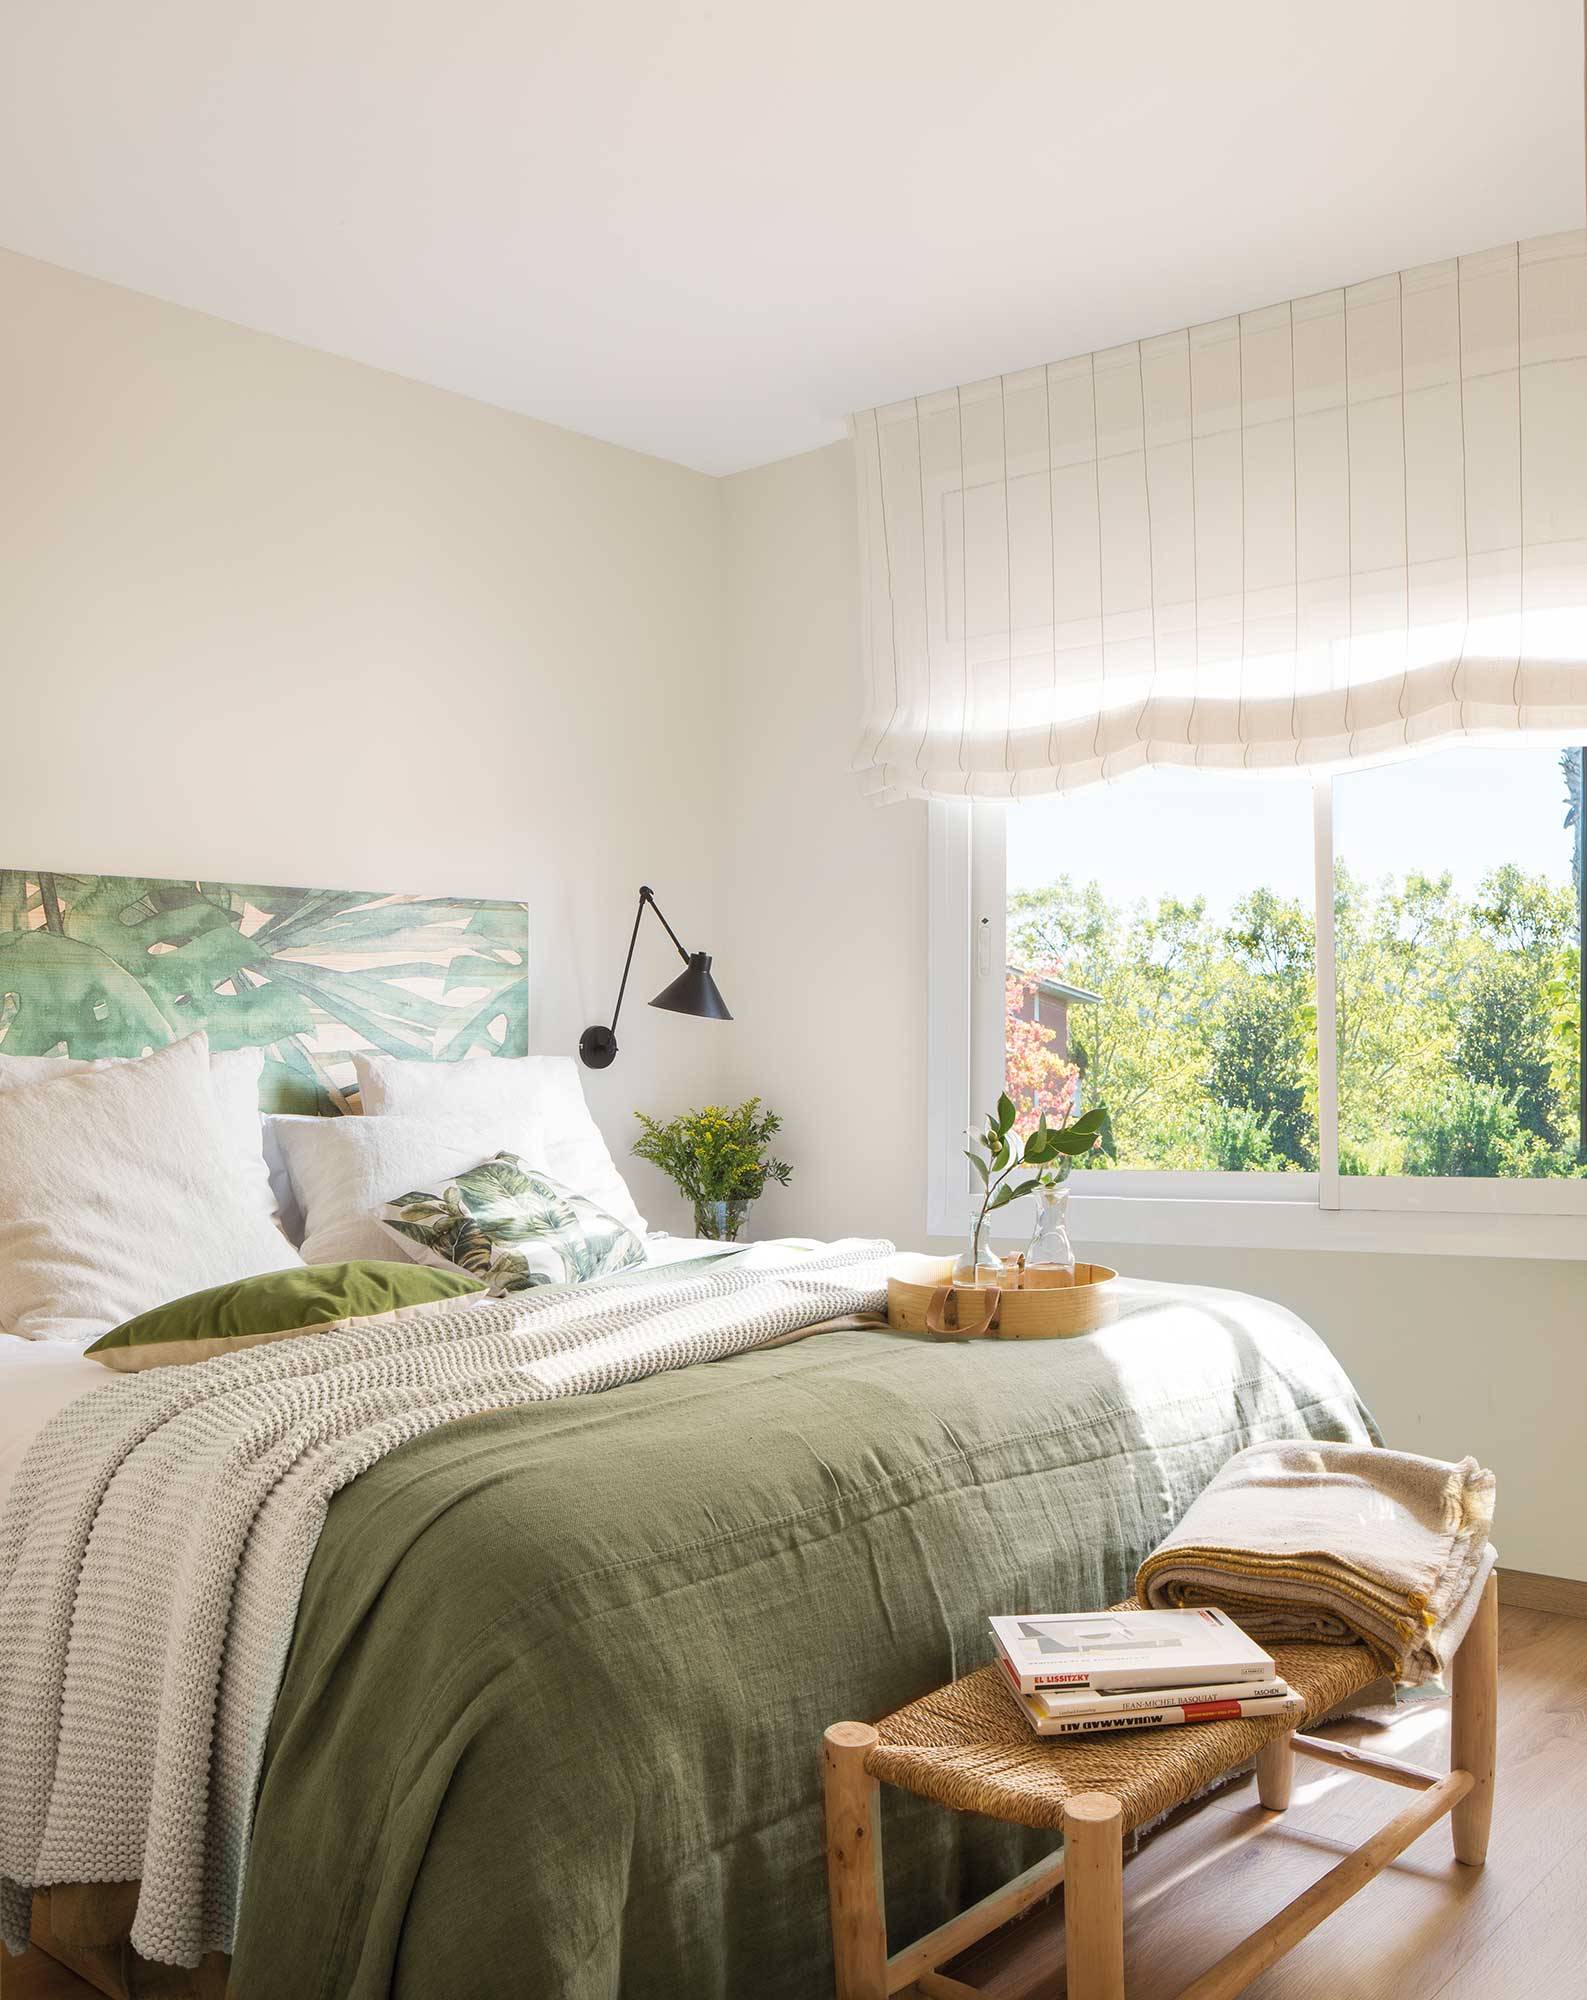 Dormitorio pequeño en blanco con cabecero de hojas_00503823